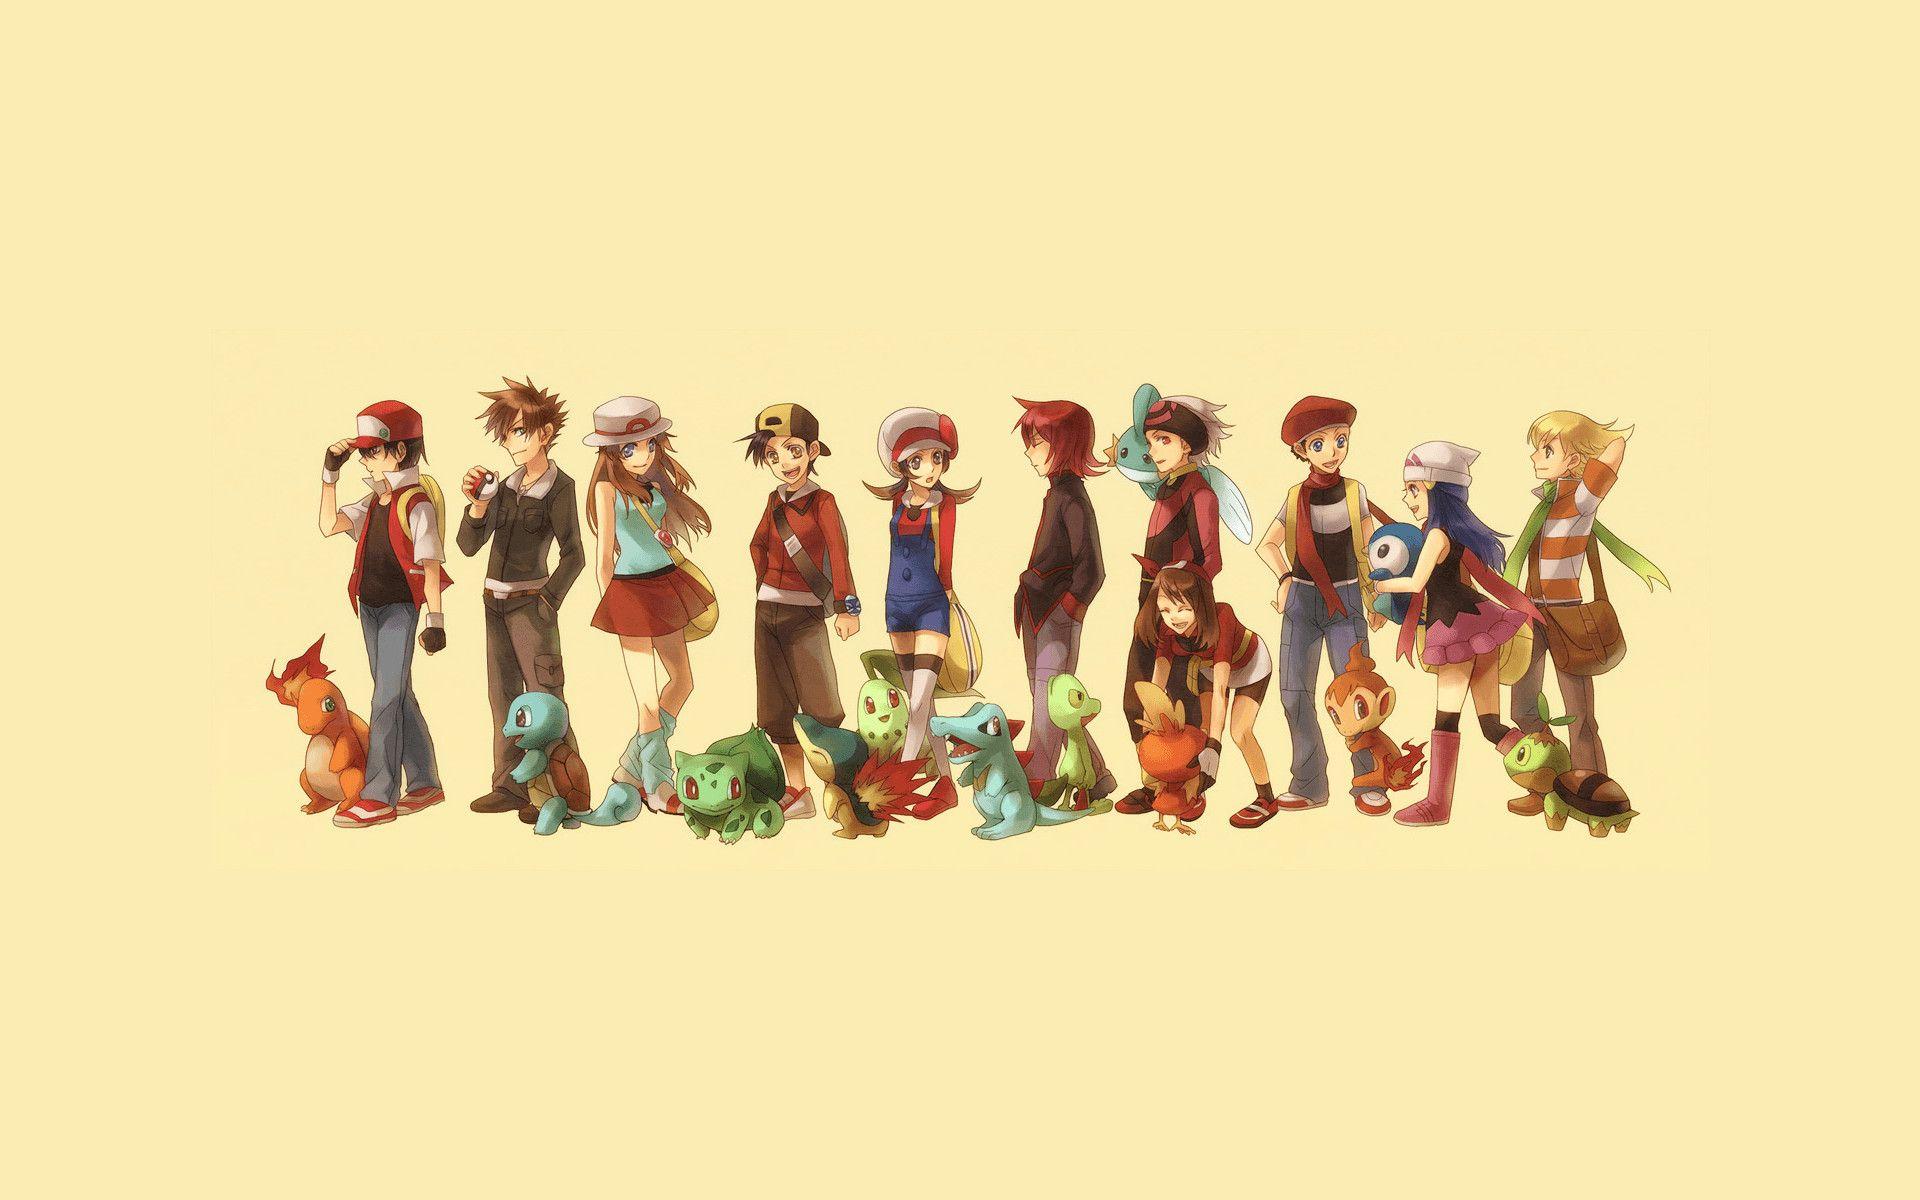 pokemon trainers